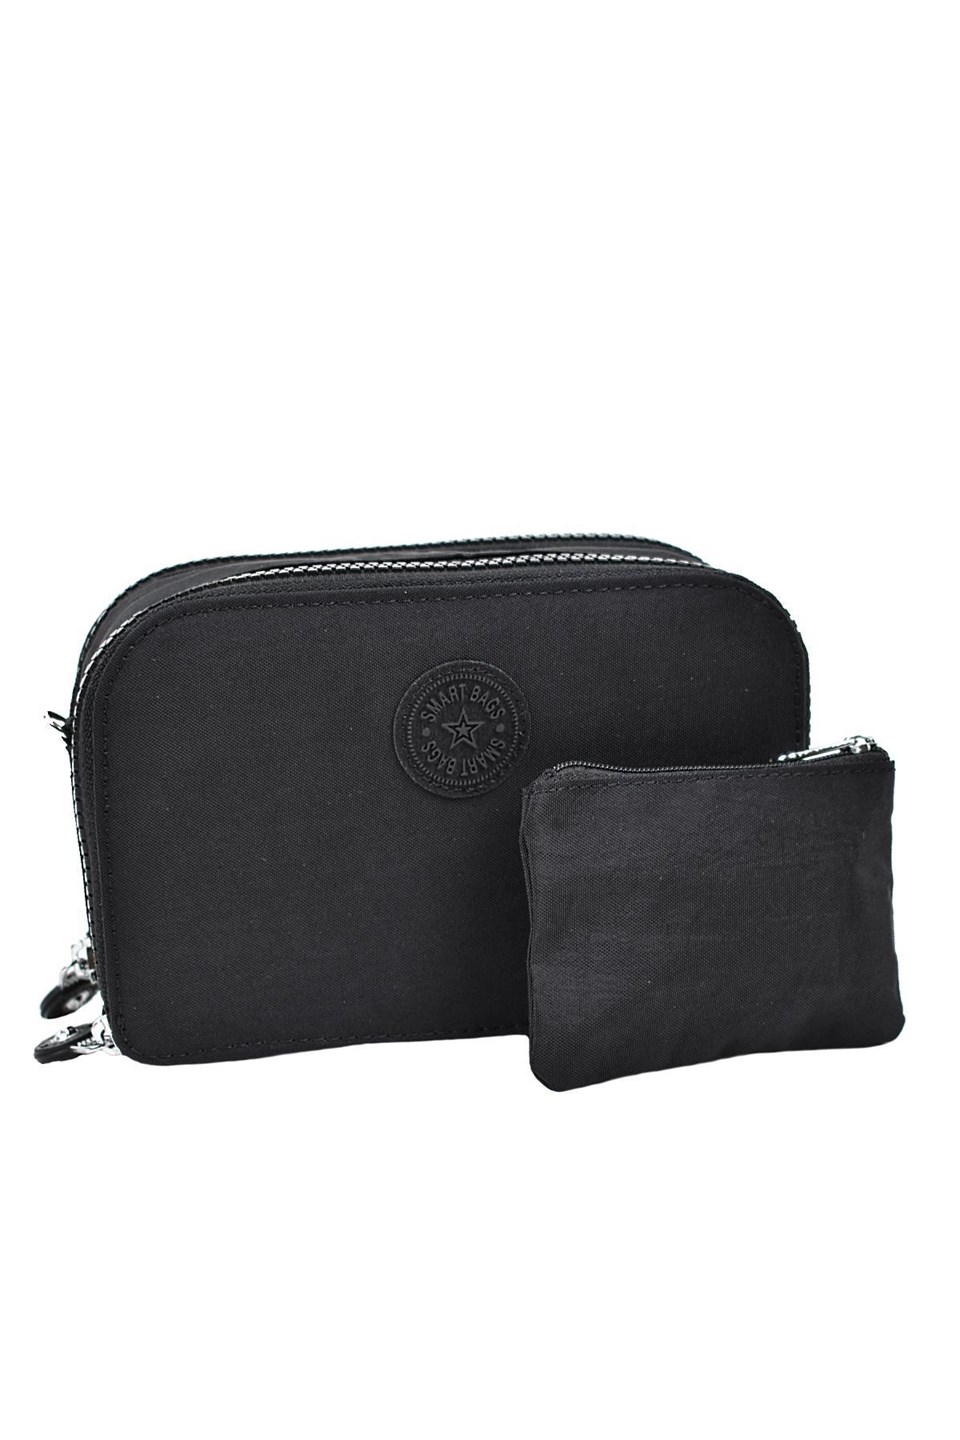 Smart Bags Askılı Cüzdan Siyah 3038